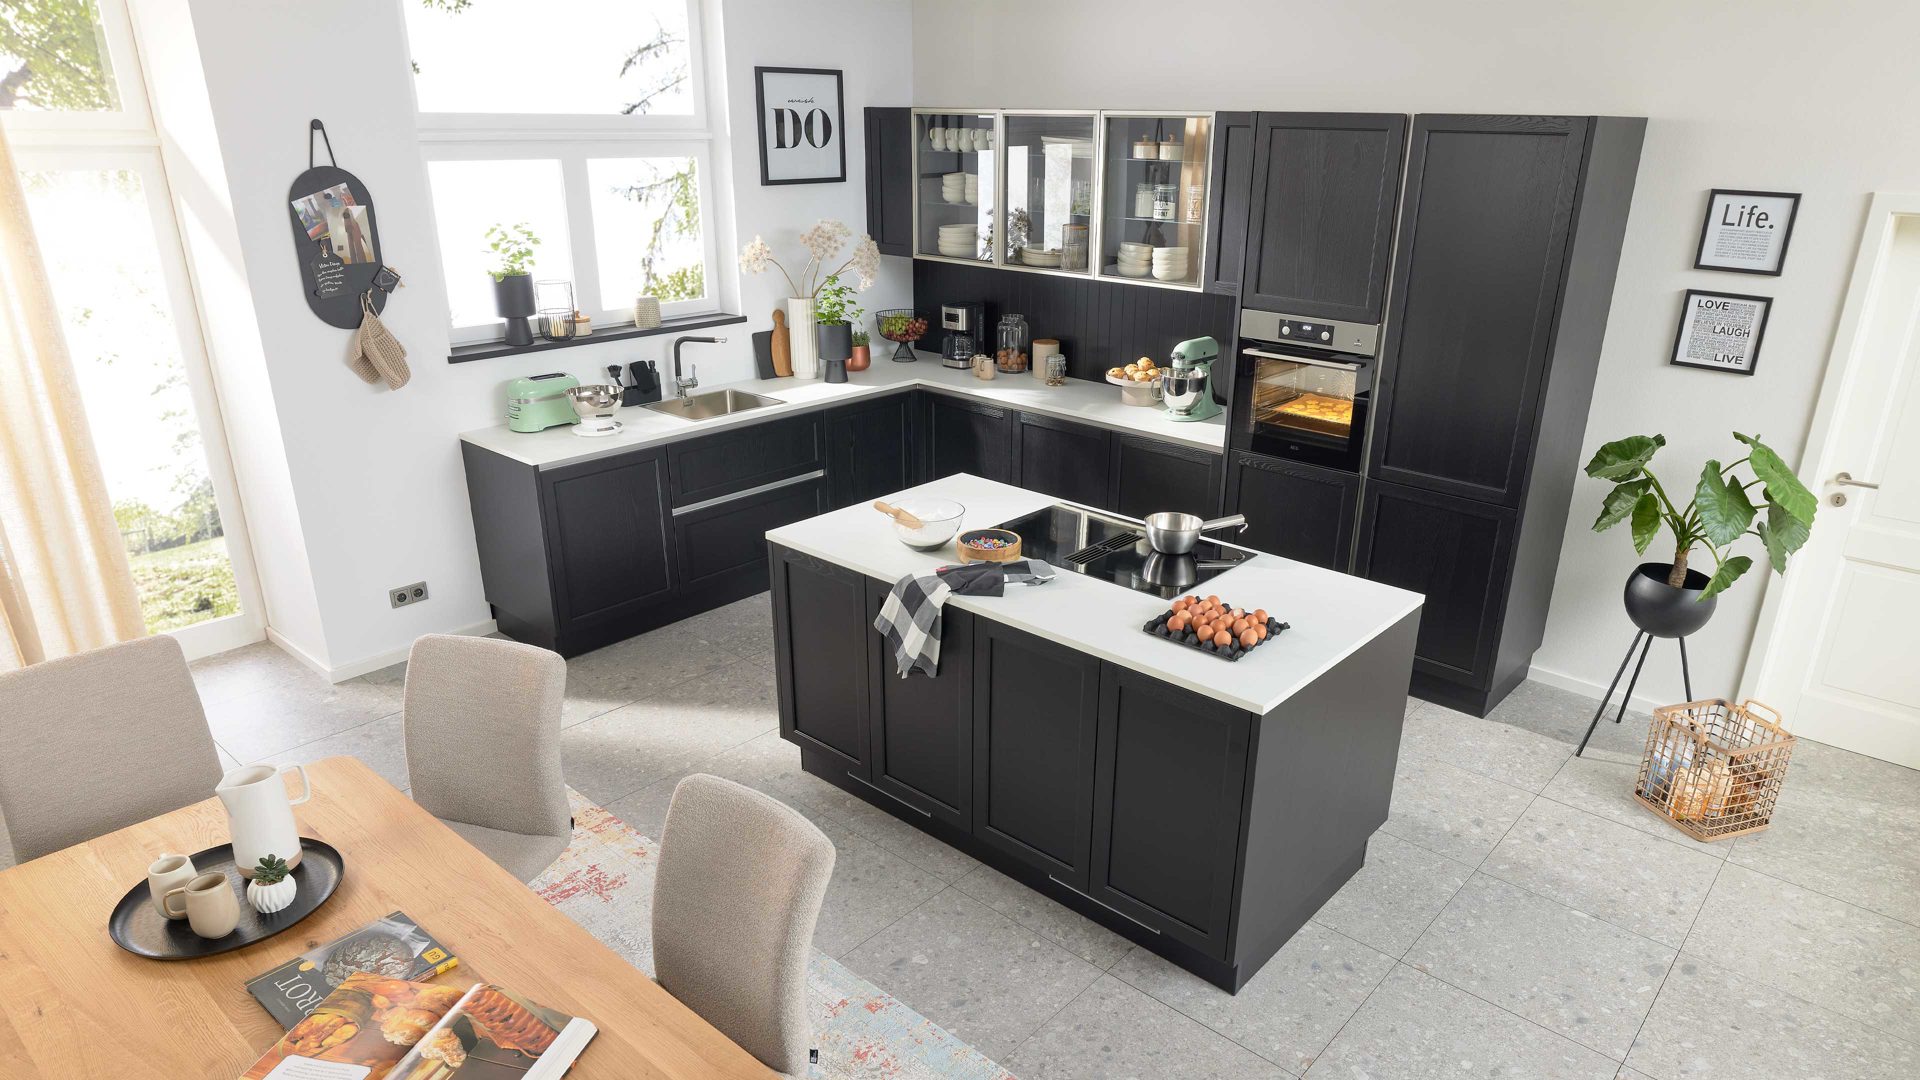 Einbauküche Interliving aus Holz in Schwarz Interliving Küche Serie 3067 mit AEG Einbaugeräten schwarze Esche – zweizeilig